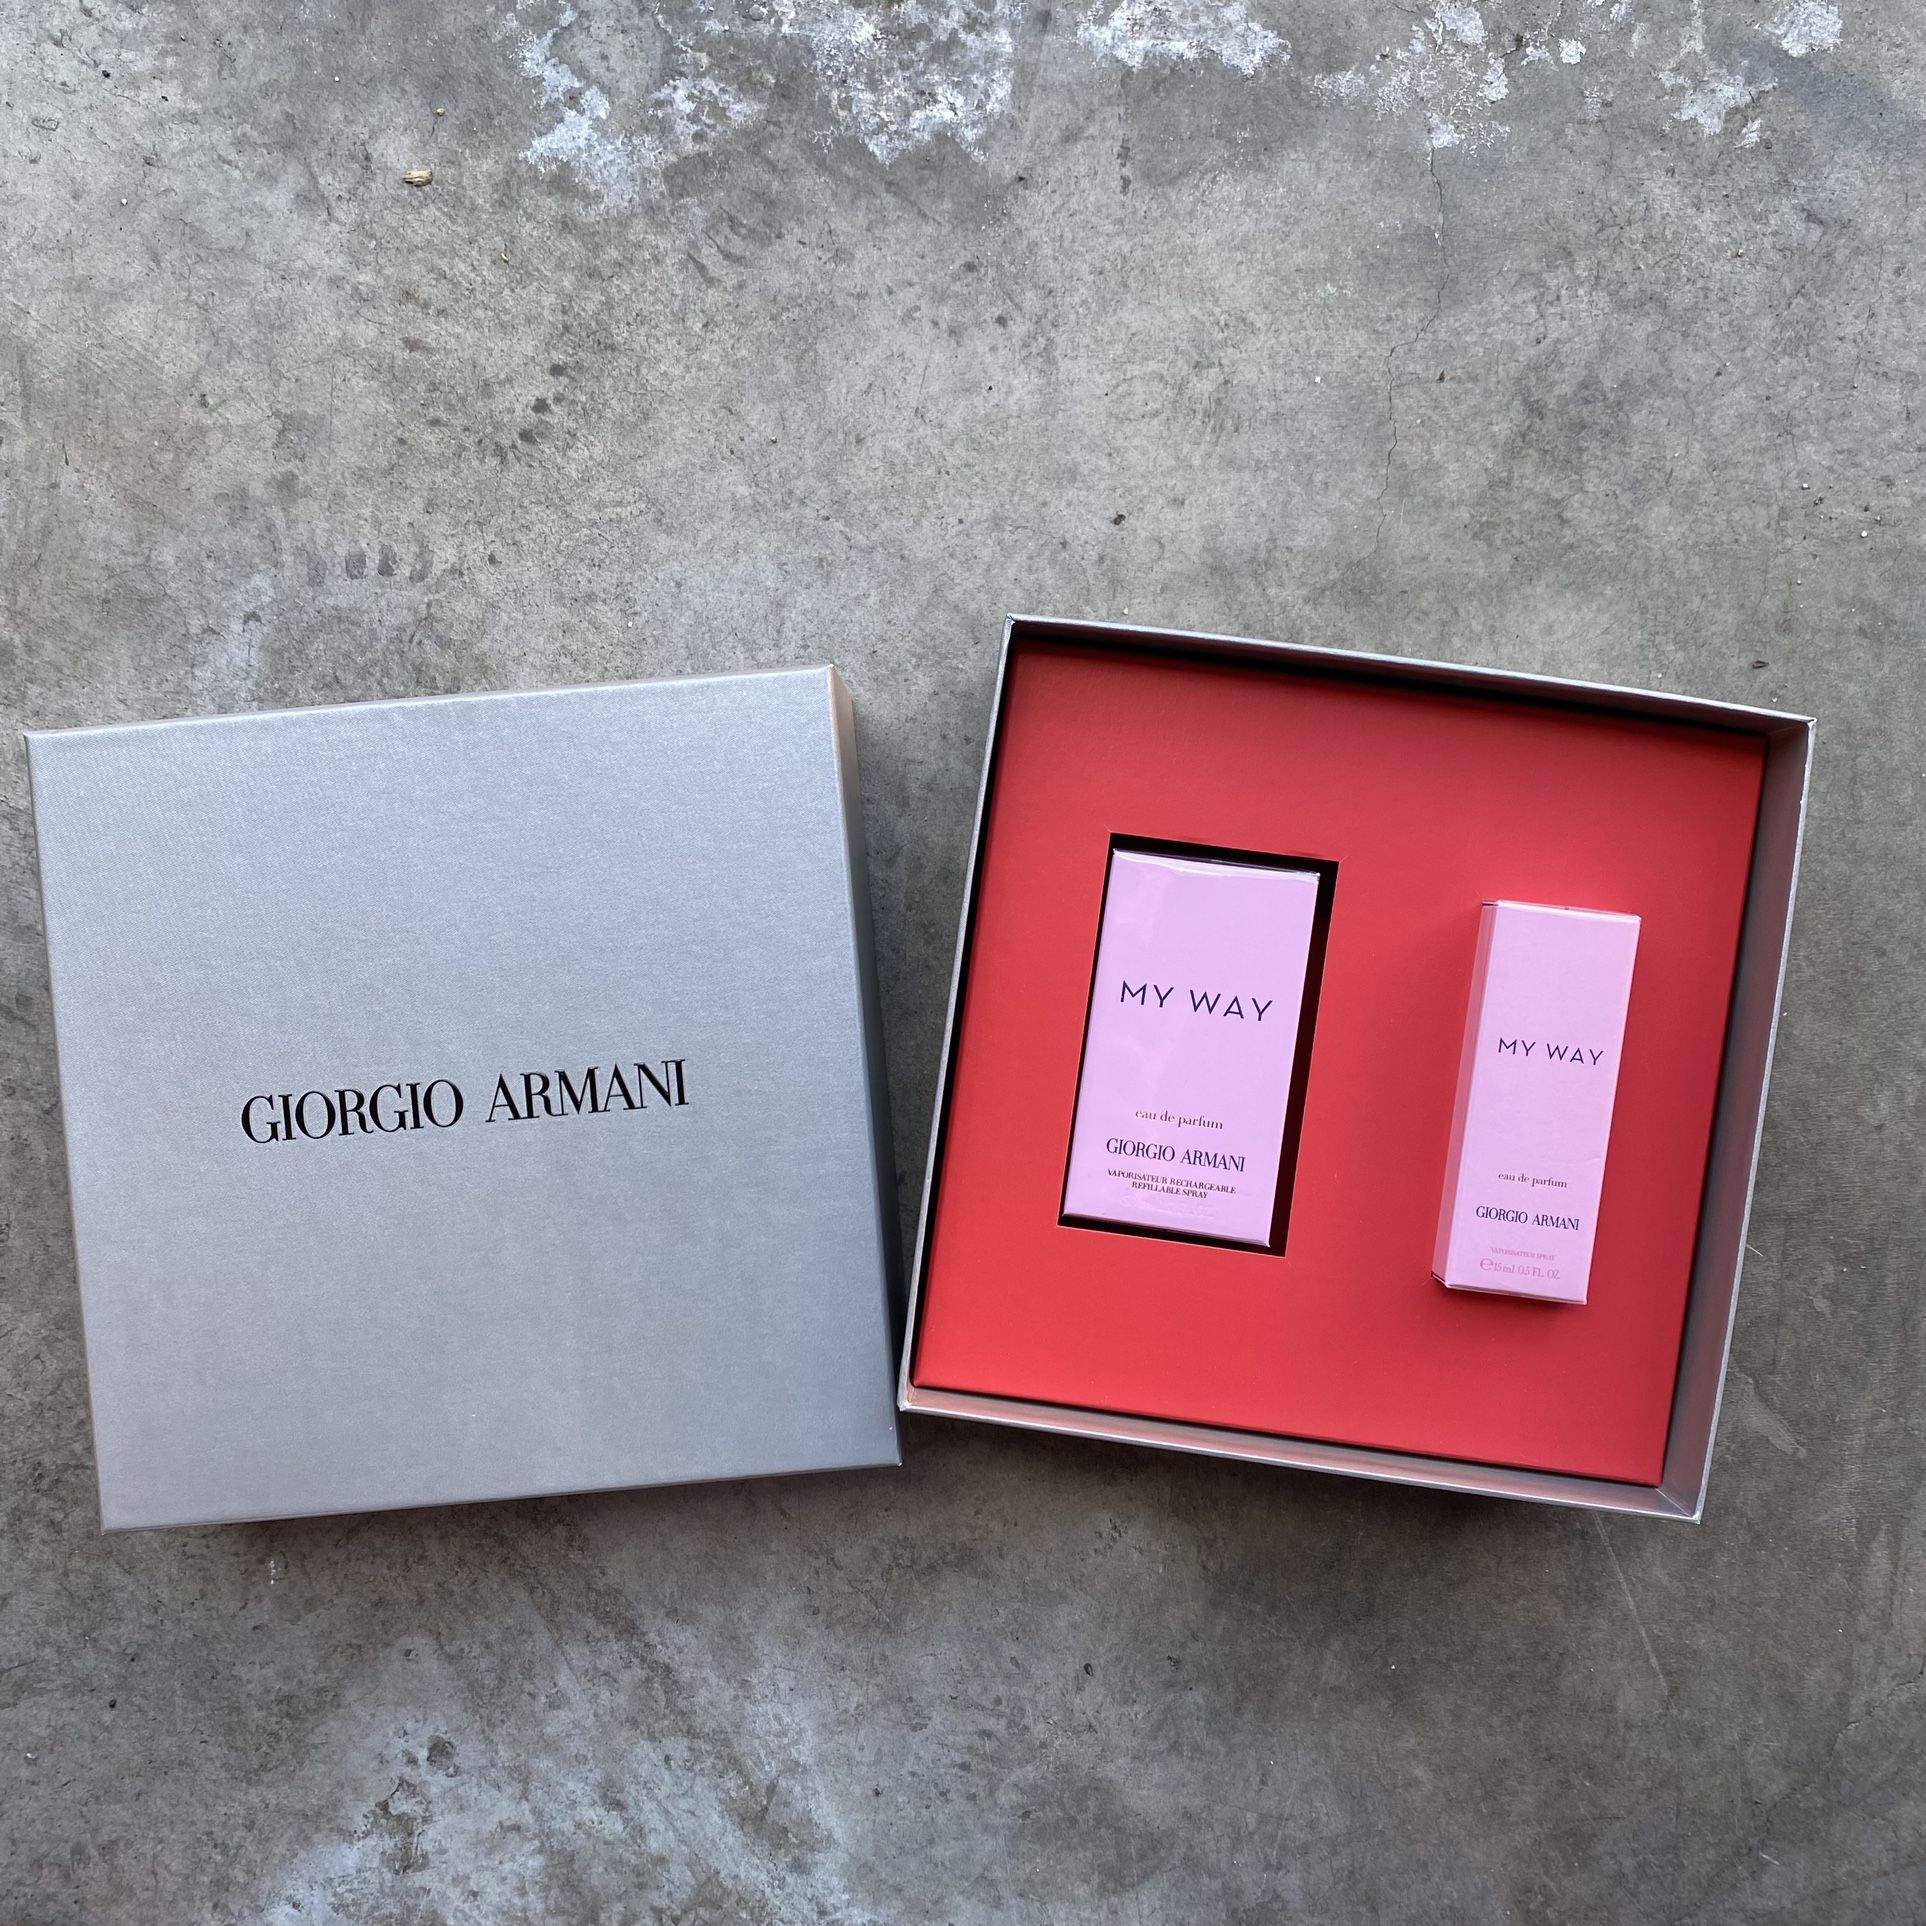 Giorgio Armani Gift Set Women’s “My Way” Perfume 3oz With Travel 0.5oz